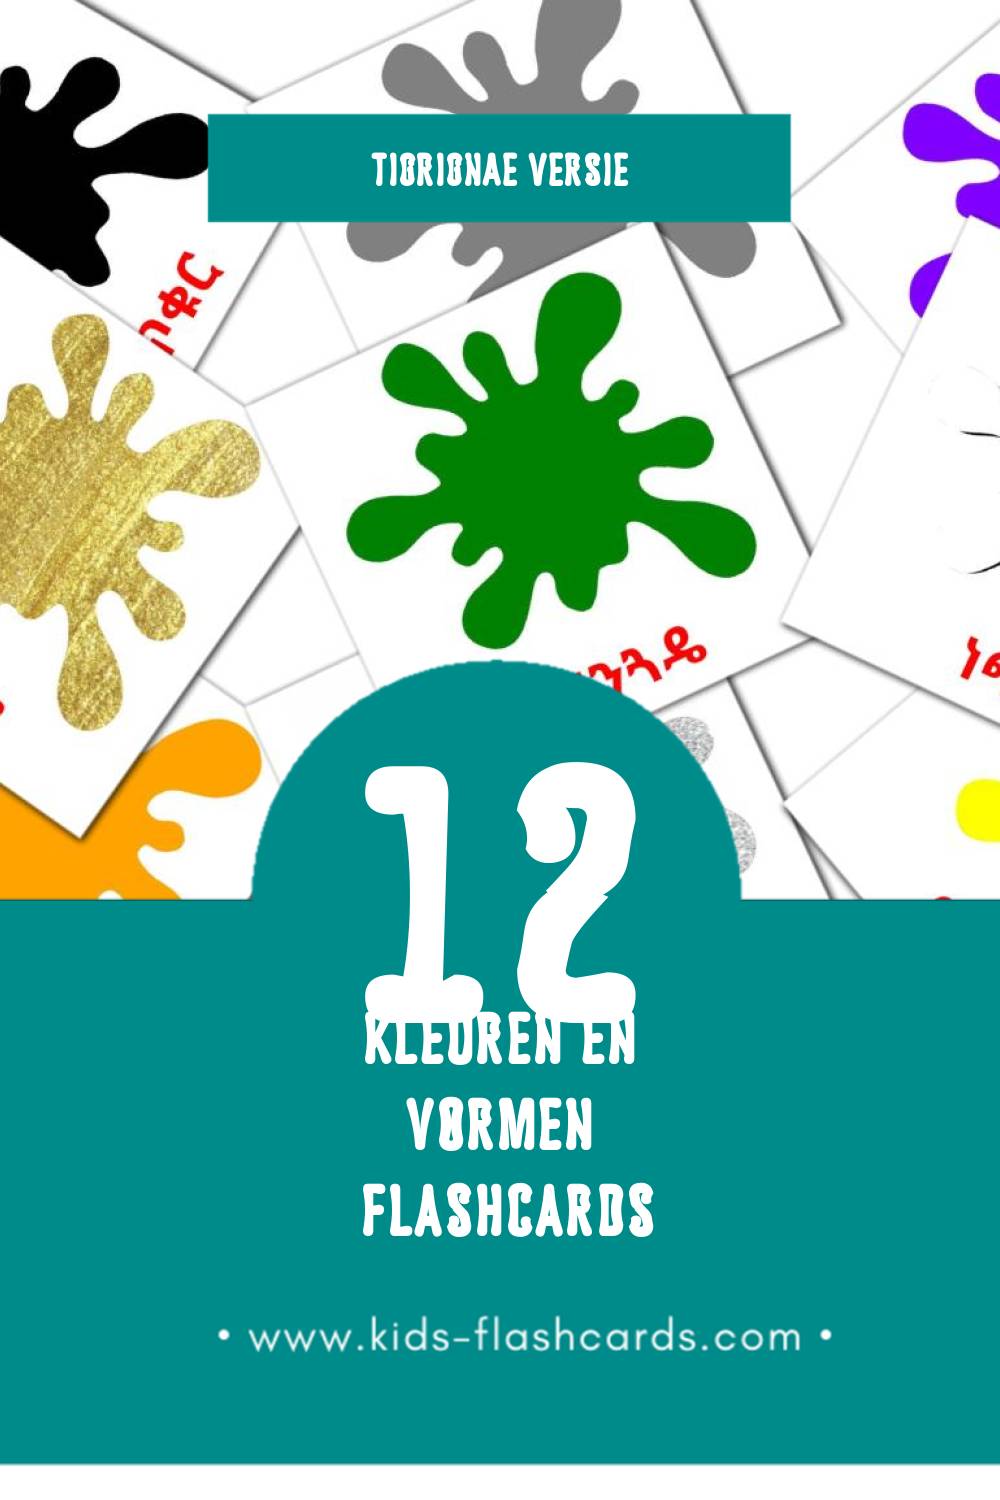 Visuele ቀለም አና ቅርጽ Flashcards voor Kleuters (12 kaarten in het Tigrigna)